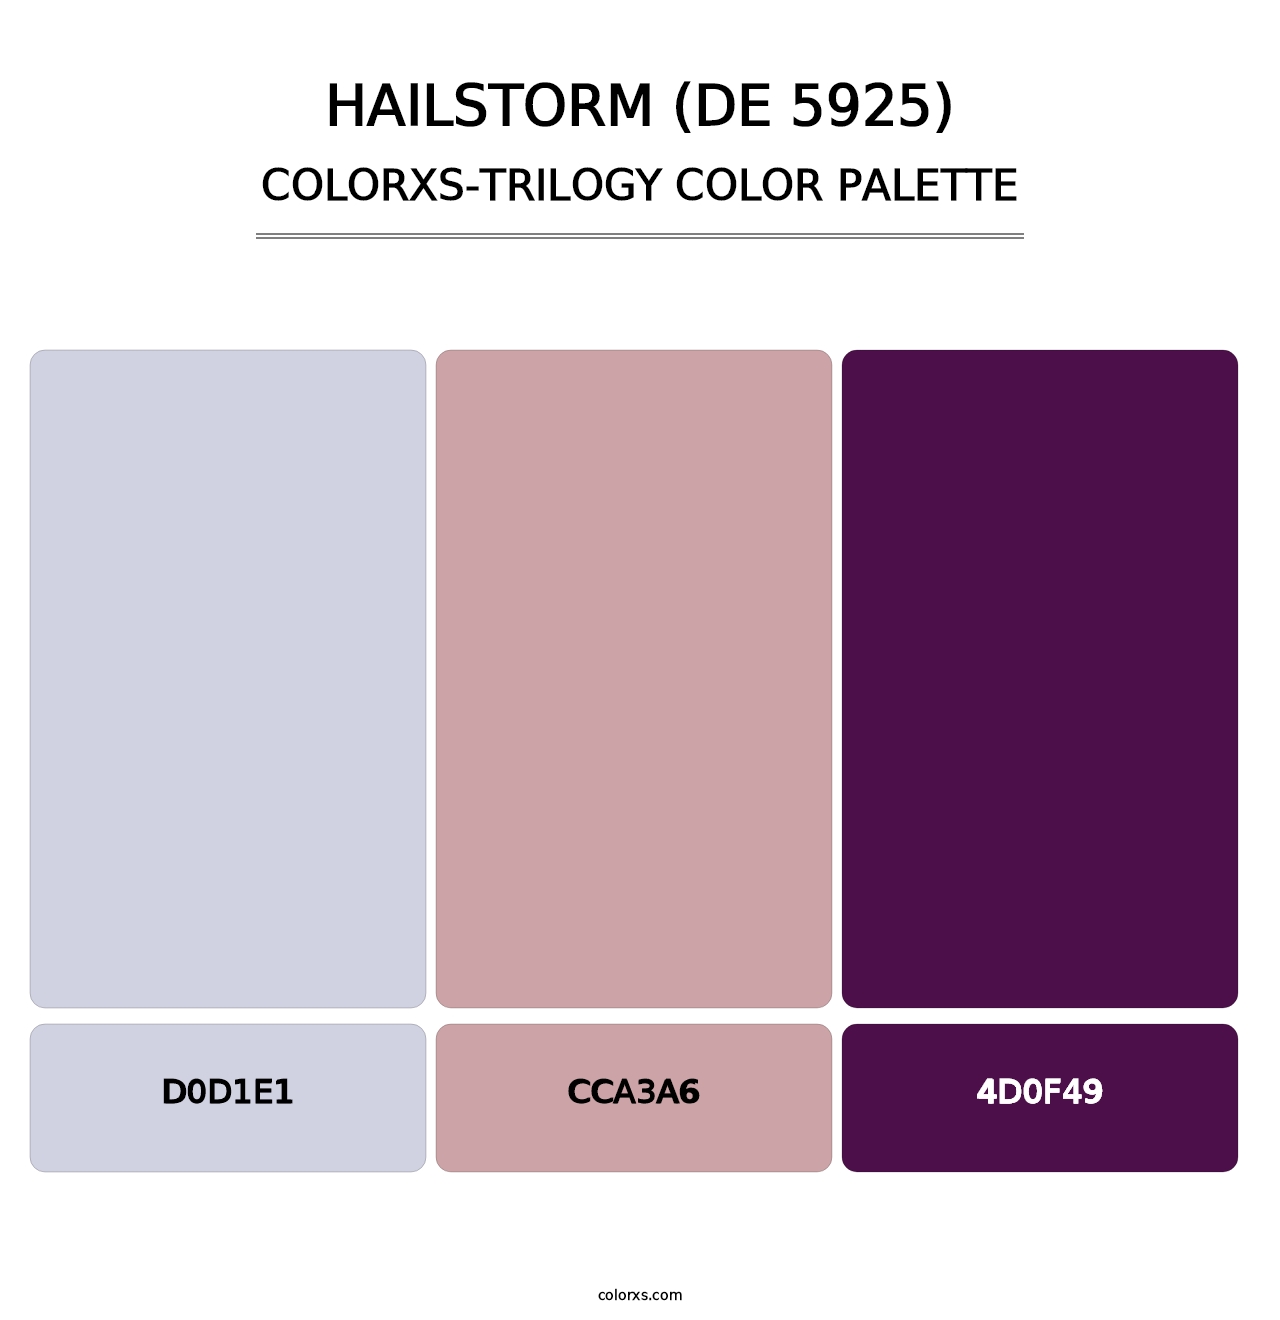 Hailstorm (DE 5925) - Colorxs Trilogy Palette